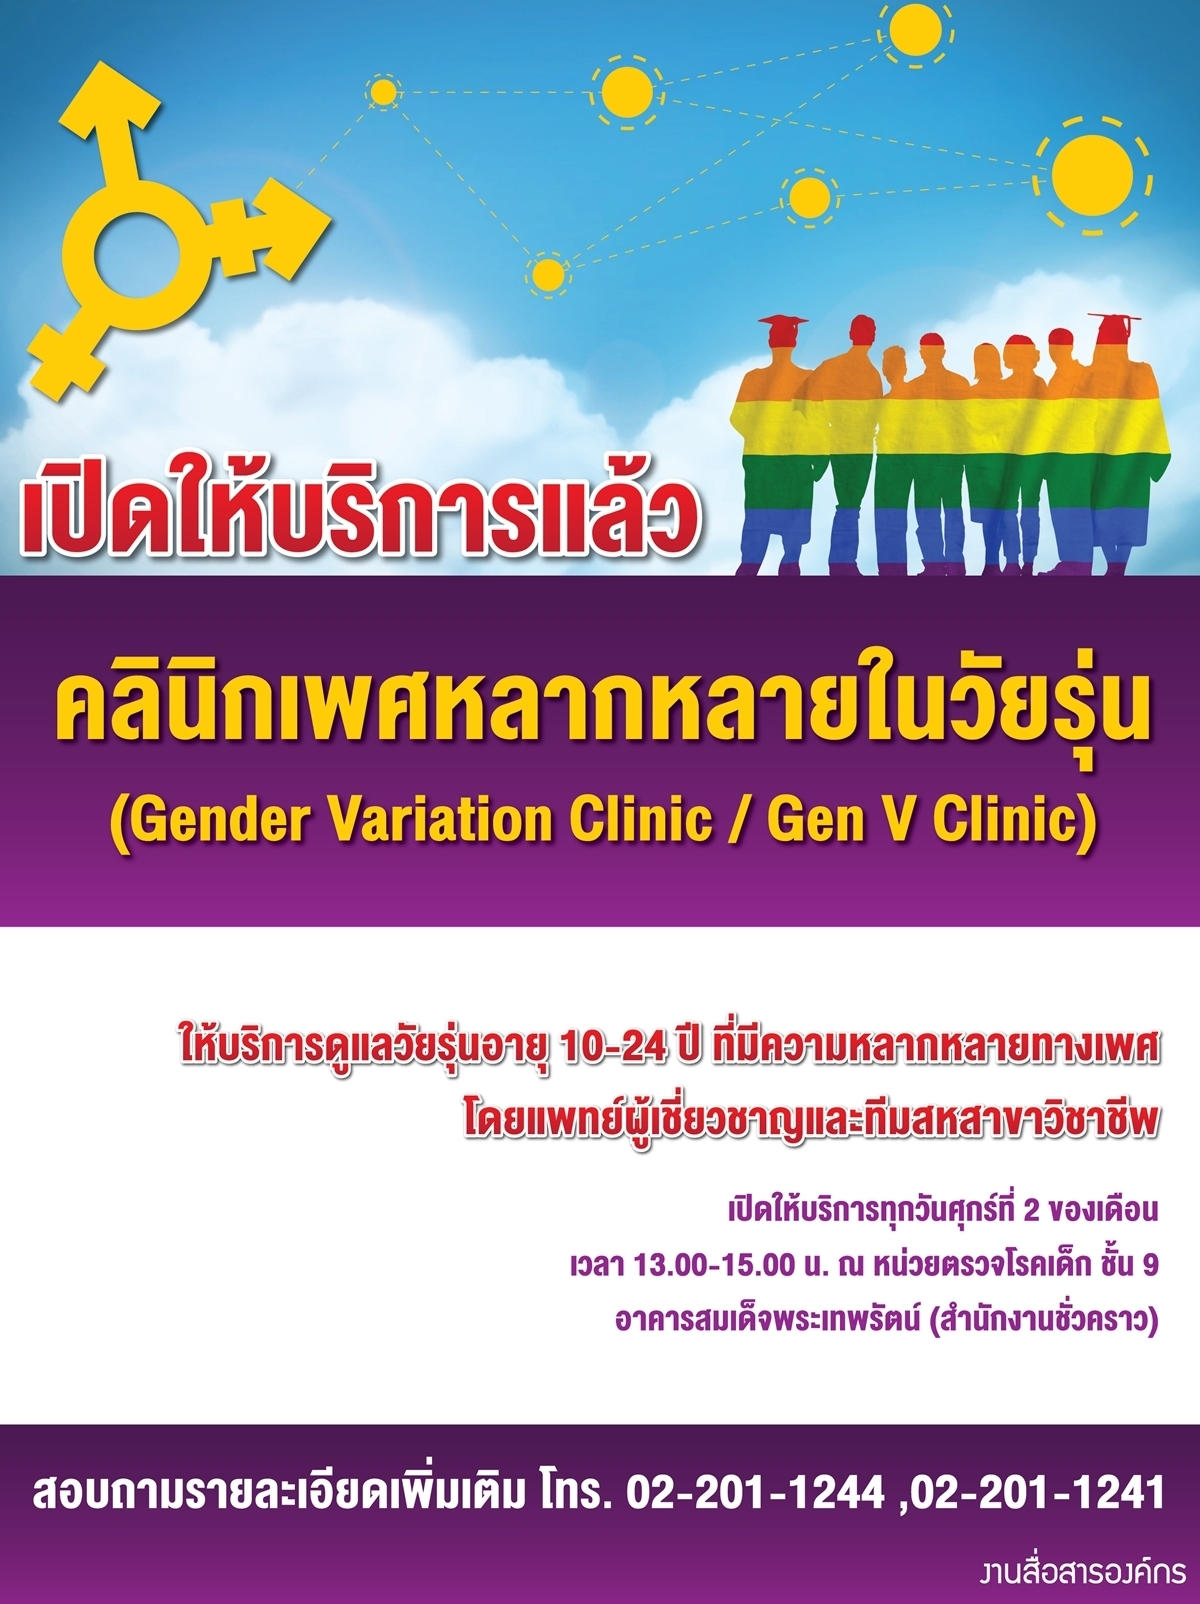 คลินิกเพศหลากหลายในวัยรุ่น (Gender Variation Clinic / Gen V Clinic) เปิดให้บริการแล้ว!!